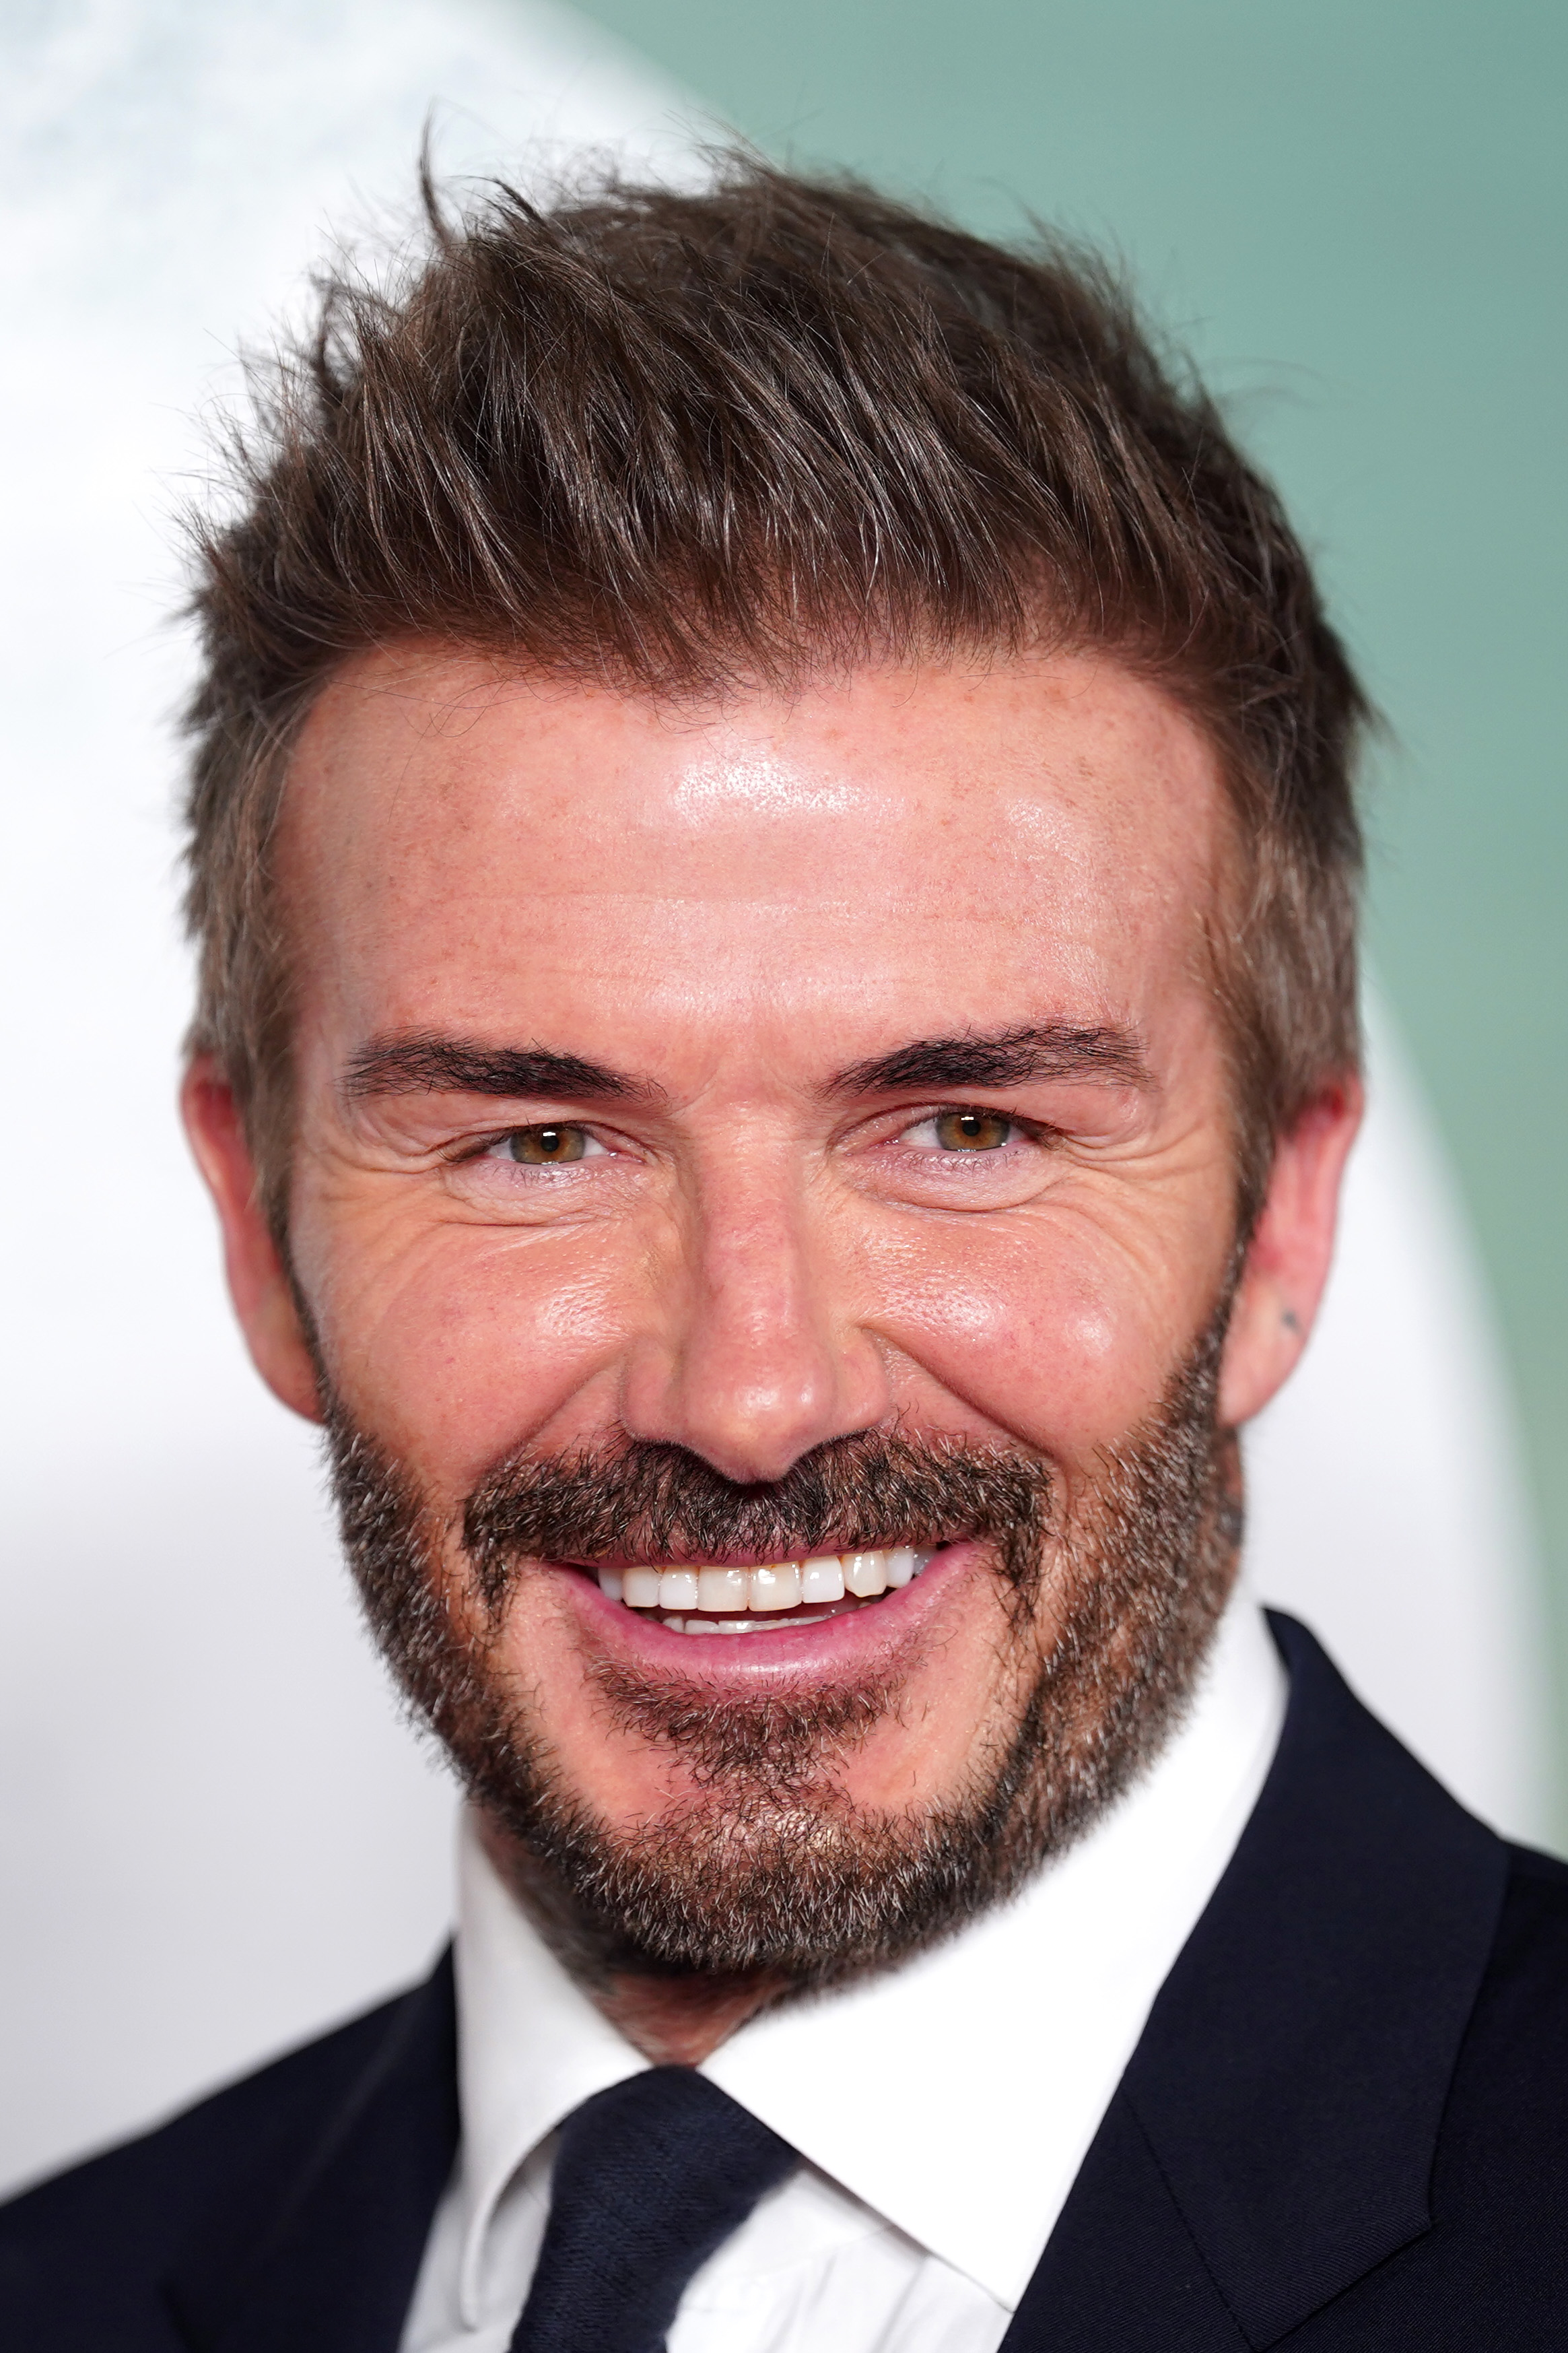 David Beckham en el estreno mundial de "99" el 9 de mayo de 2024, en Manchester, Inglaterra. | Fuente: Getty Images